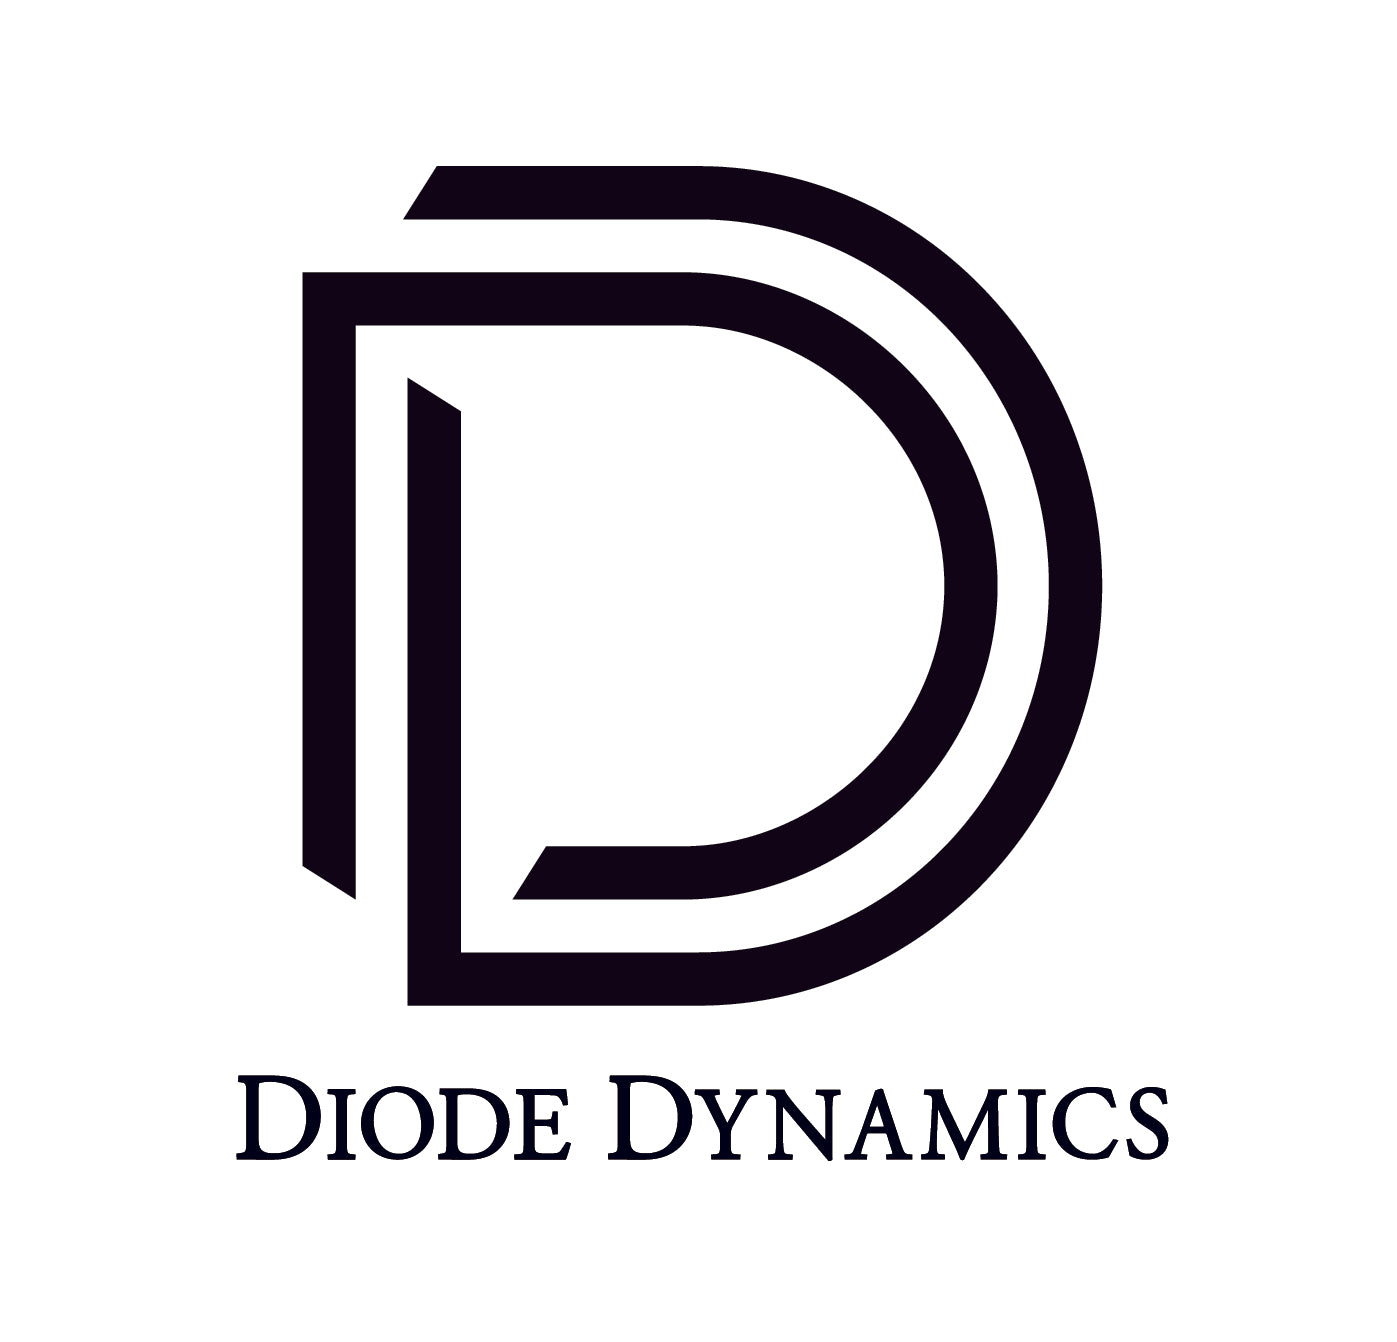 Diode Dynamics - SS5 Stealth LED 4-Pod Kit For 2014-2023 Toyota 4Runner Pro White Driving